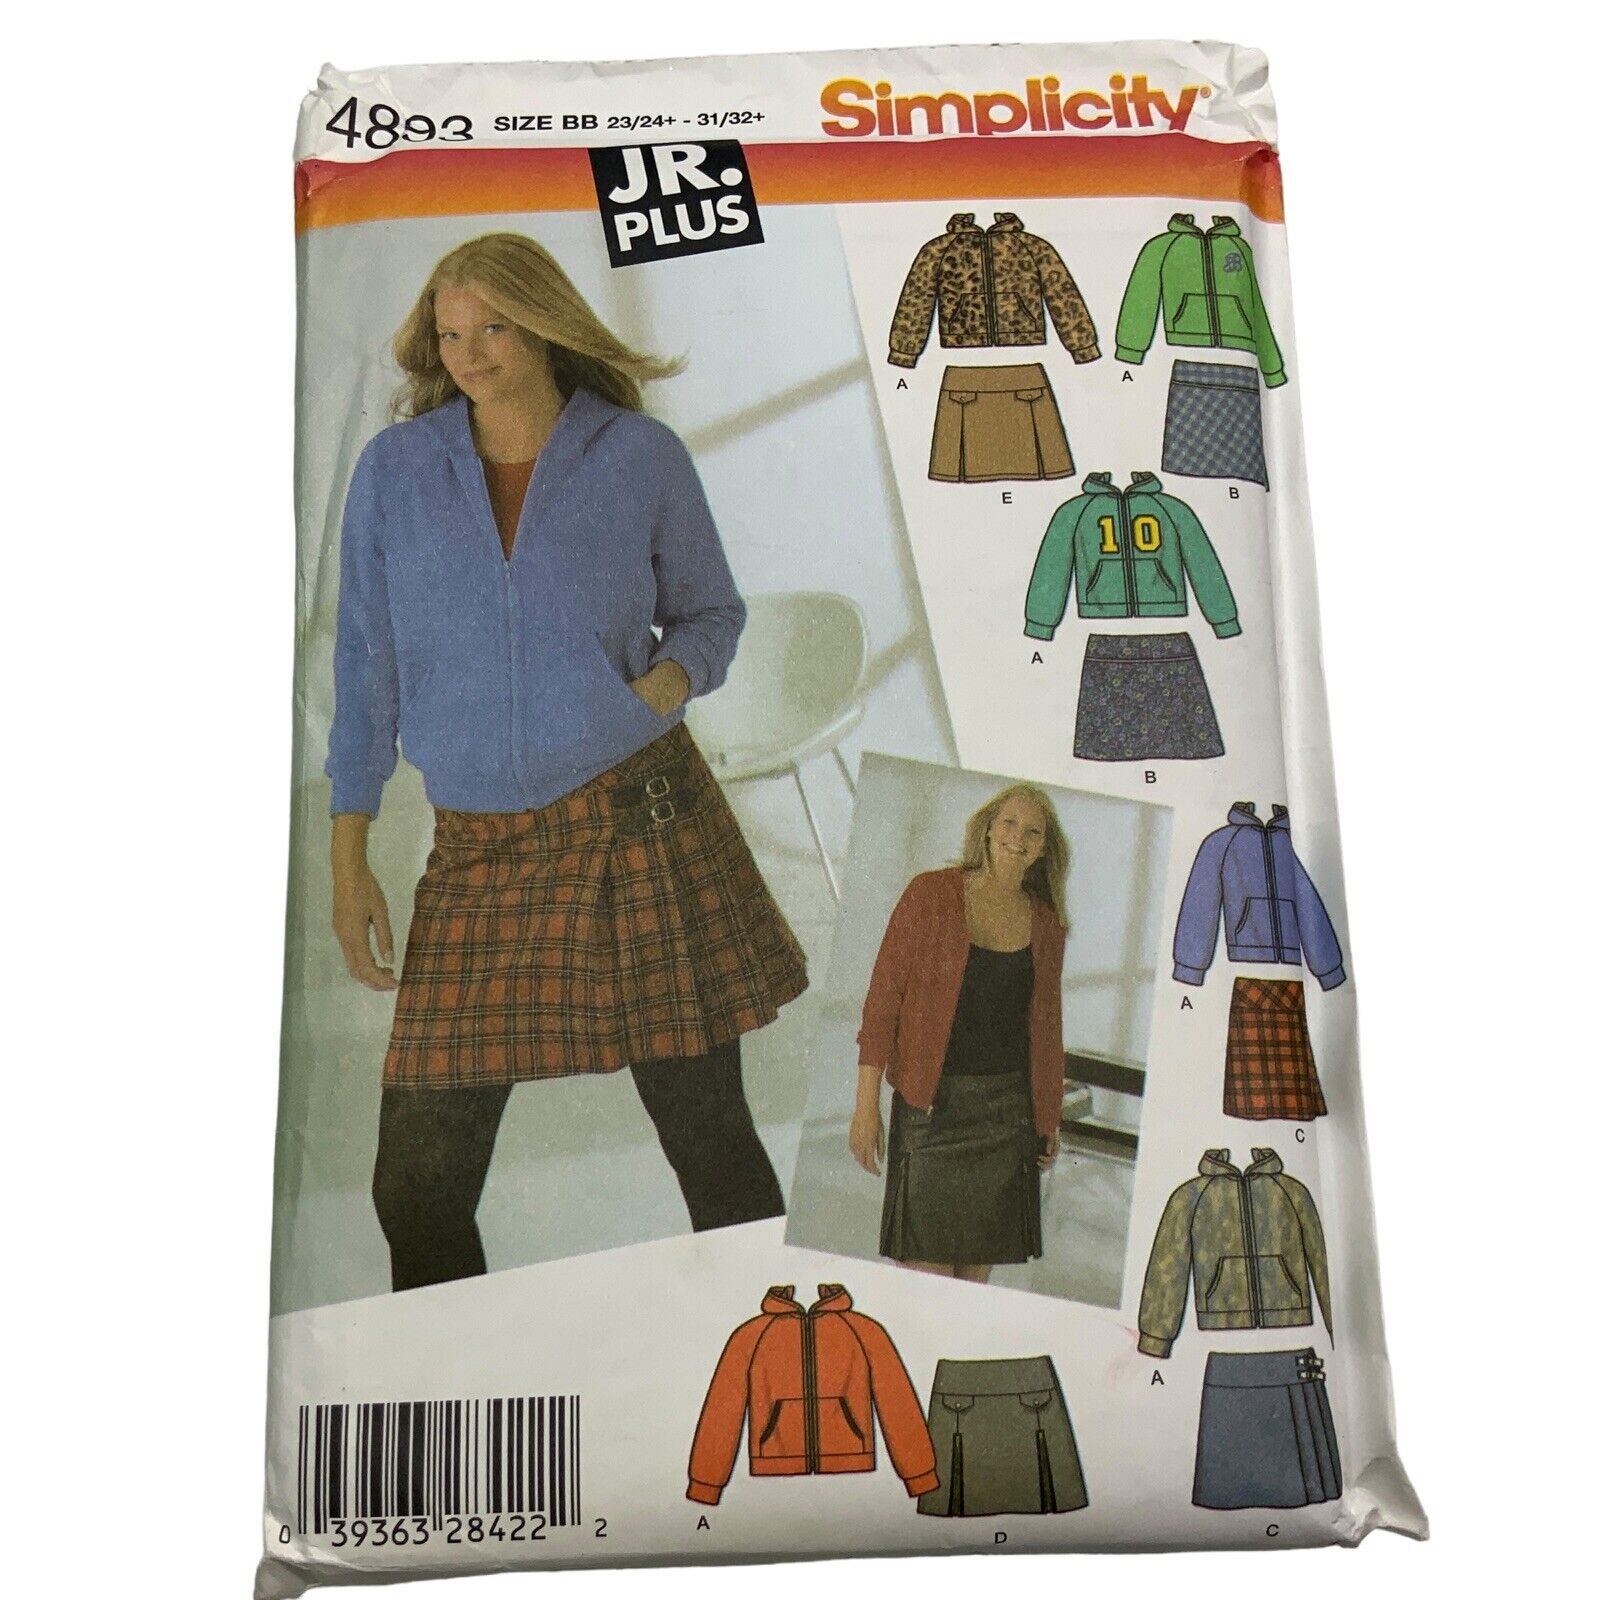 Simplicity Girls Jr Plus Skirt Sweatshirt Sewing Pattern 4893 Sizes 23/24 31/32+